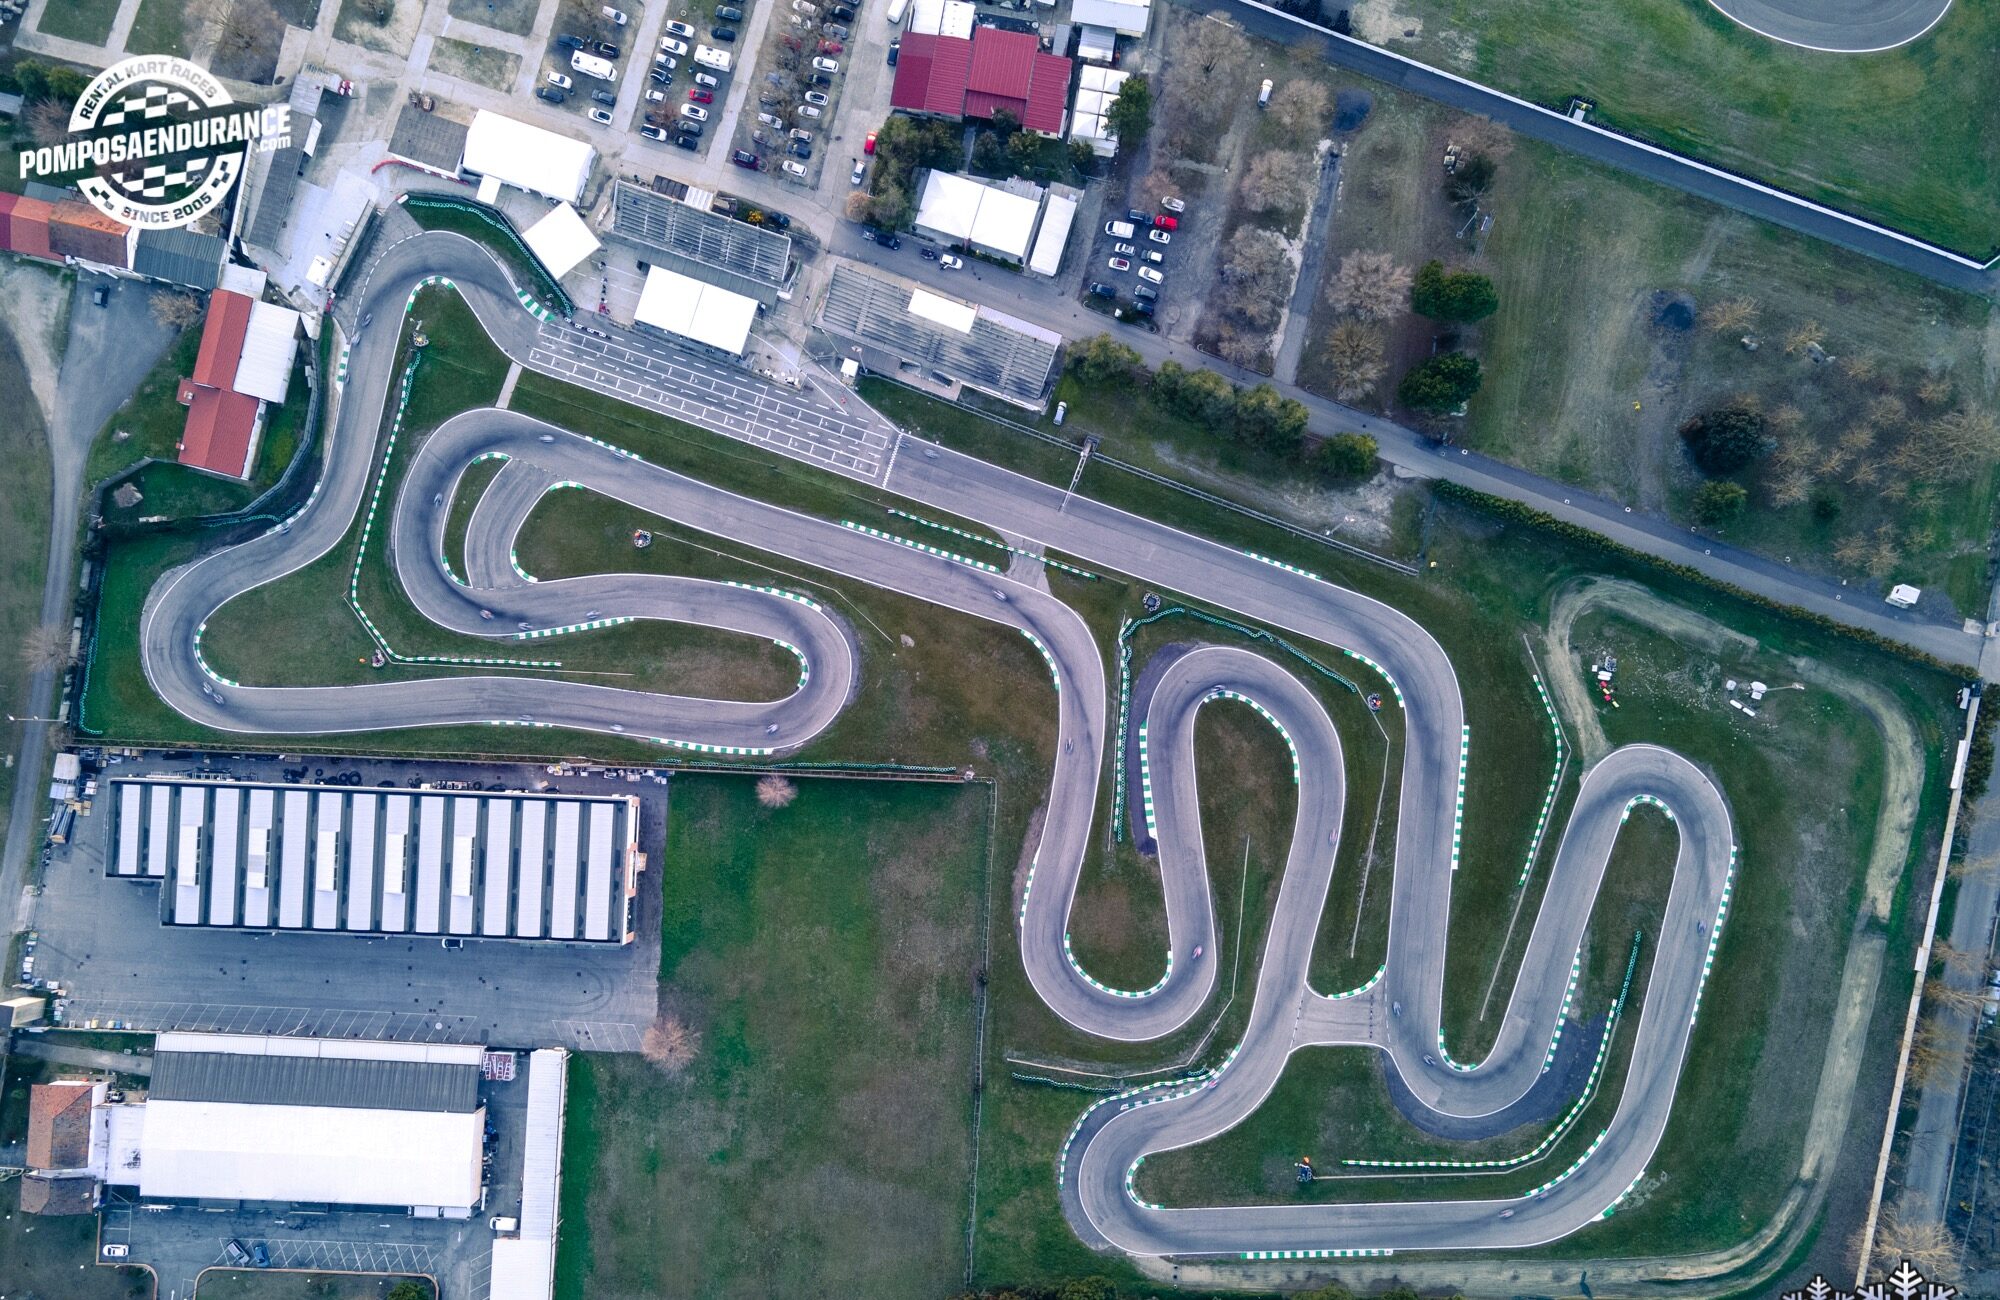 Circuito di Pomposa Autodromo Kartodromo Motocross